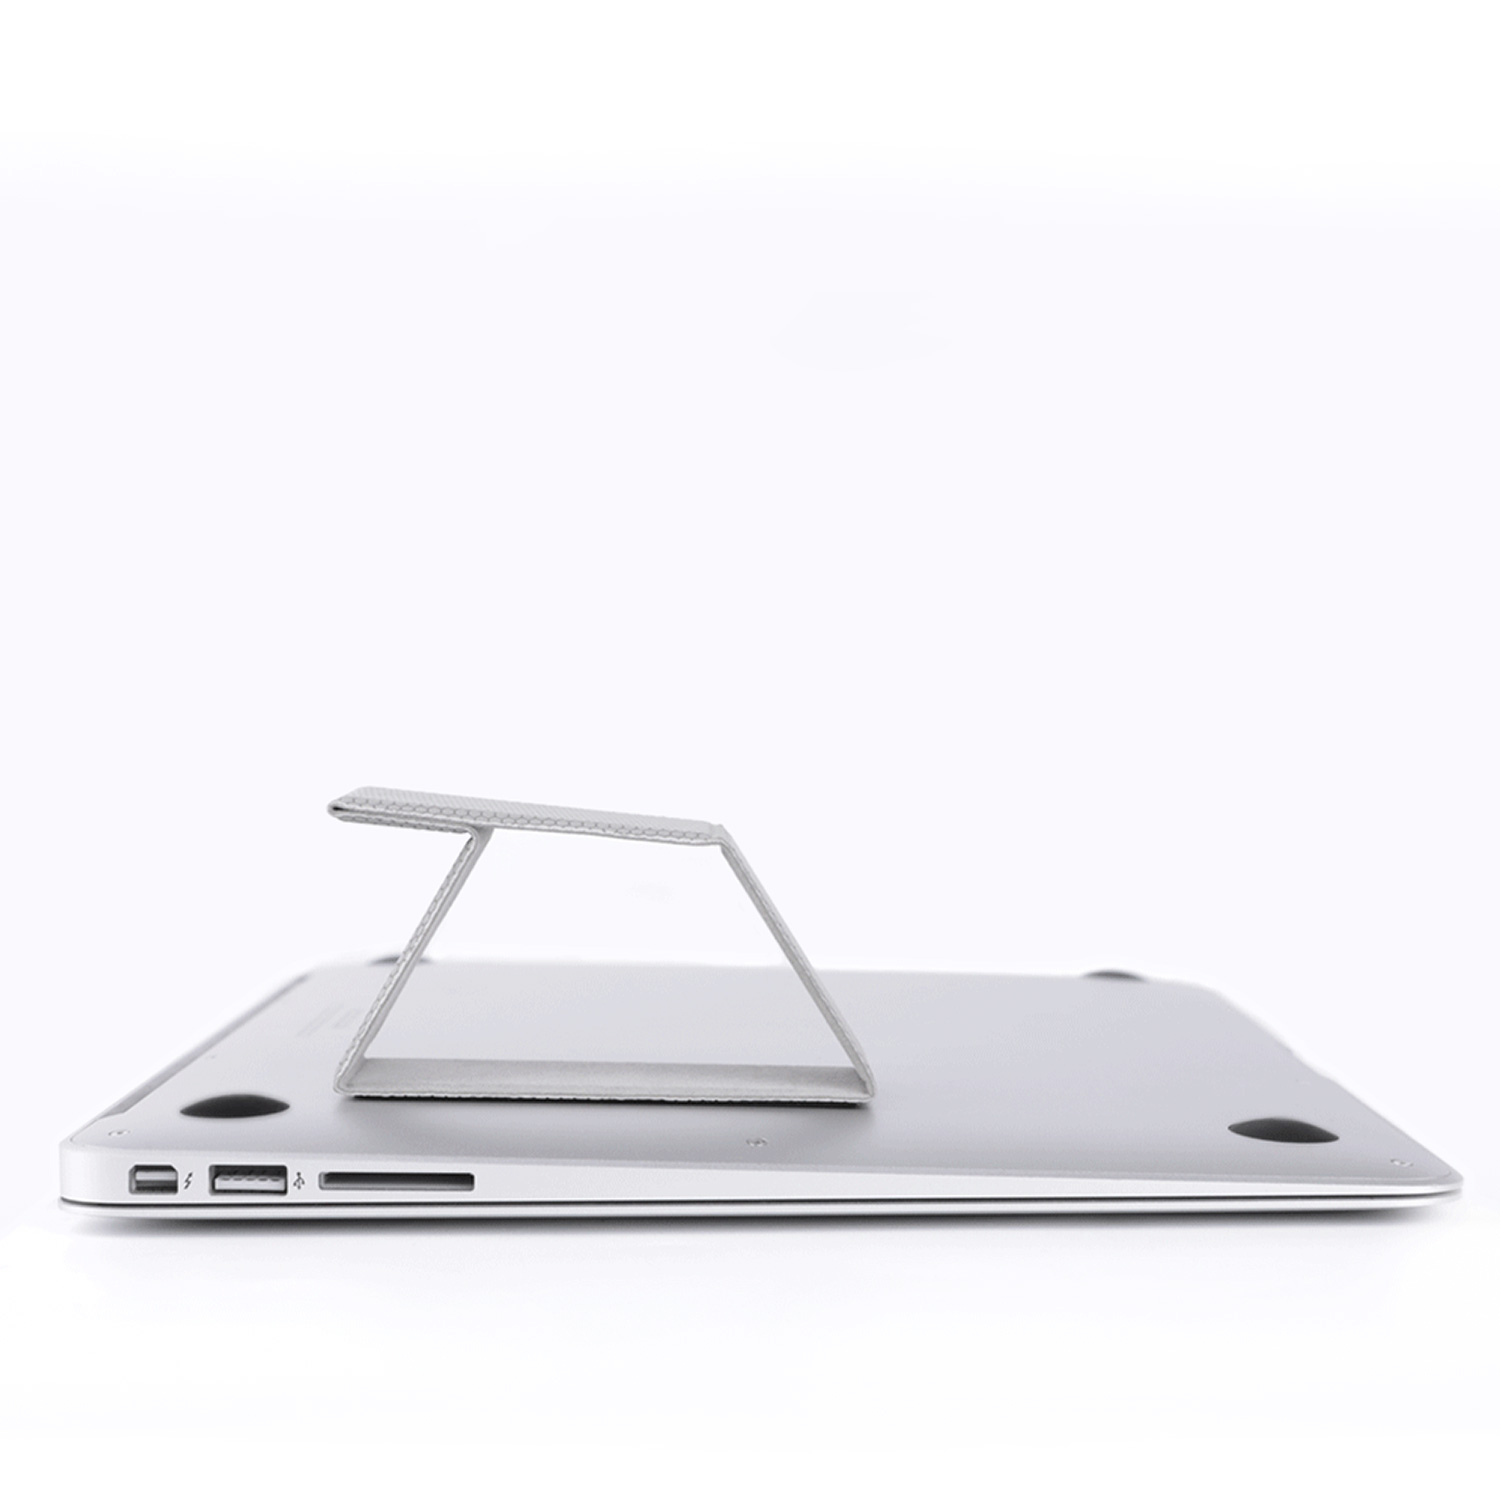 Nillkin Ascent Stand Mini Laptopständer - Richtige Körperhaltung beim Arbeiten am Computer